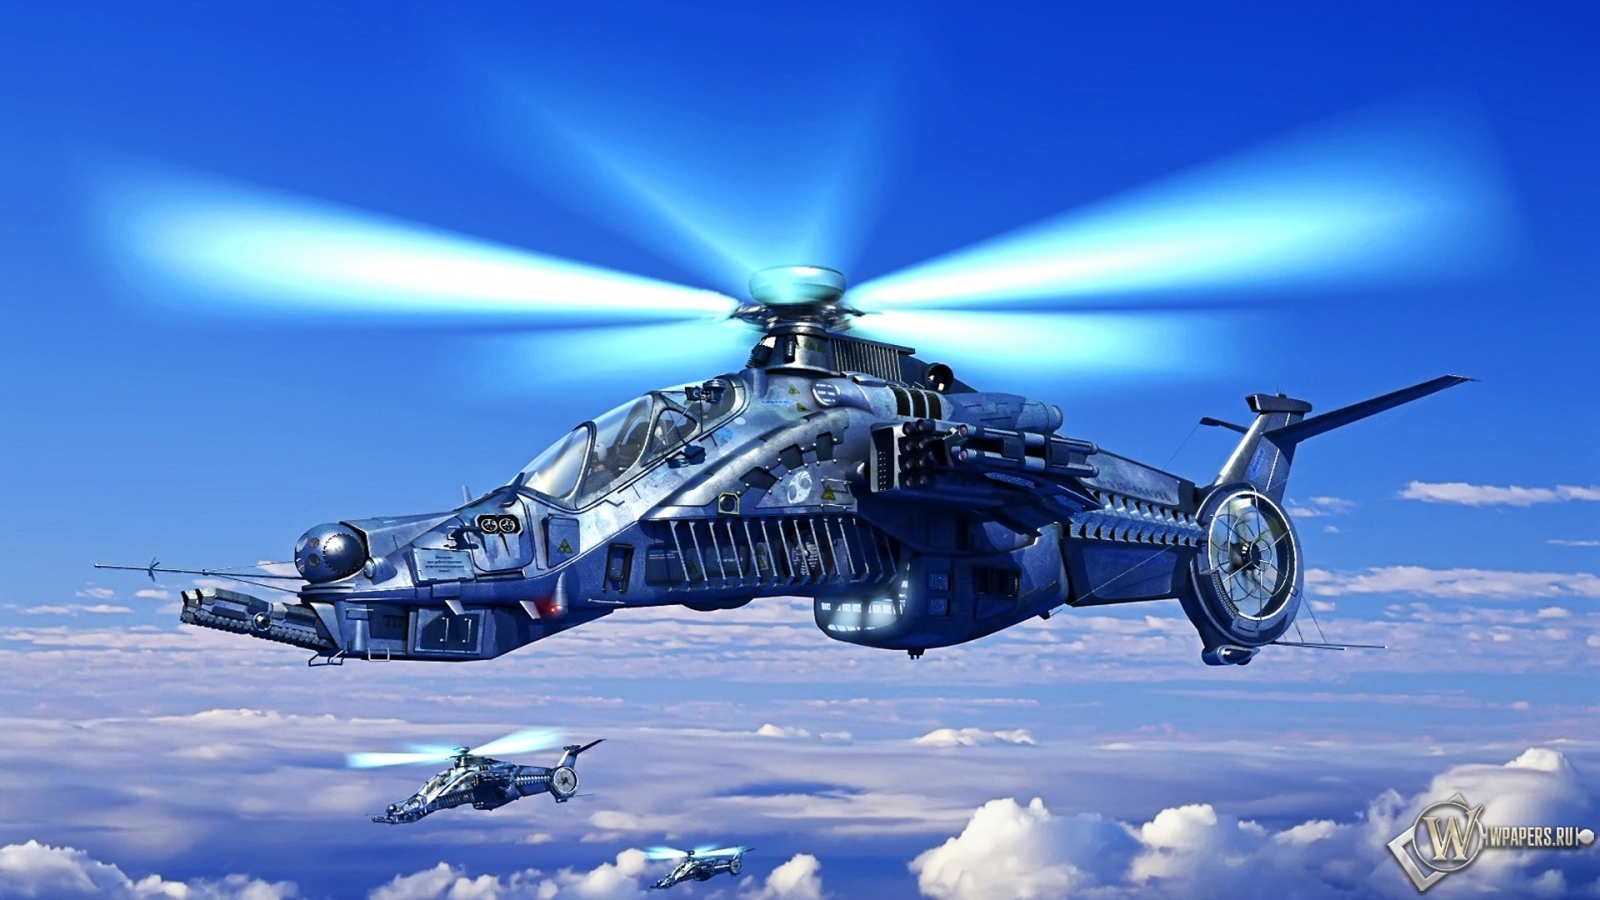 Вертолет будующего 1600x900